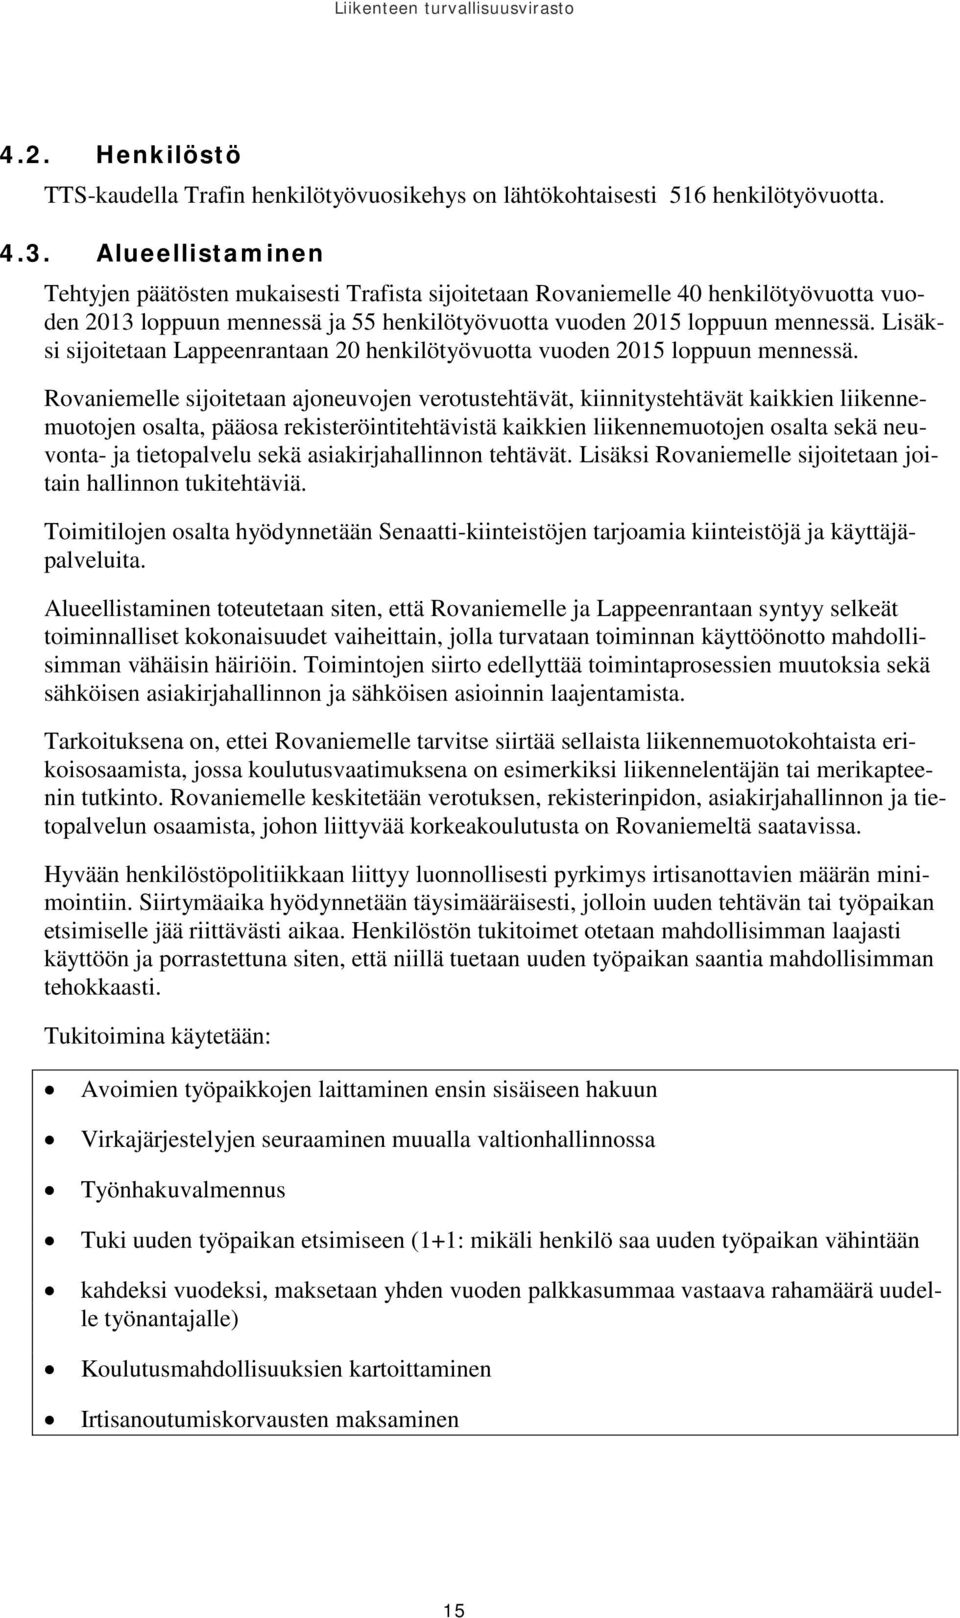 Lisäksi sijoitetaan Lappeenrantaan 20 henkilötyövuotta vuoden 2015 loppuun mennessä.